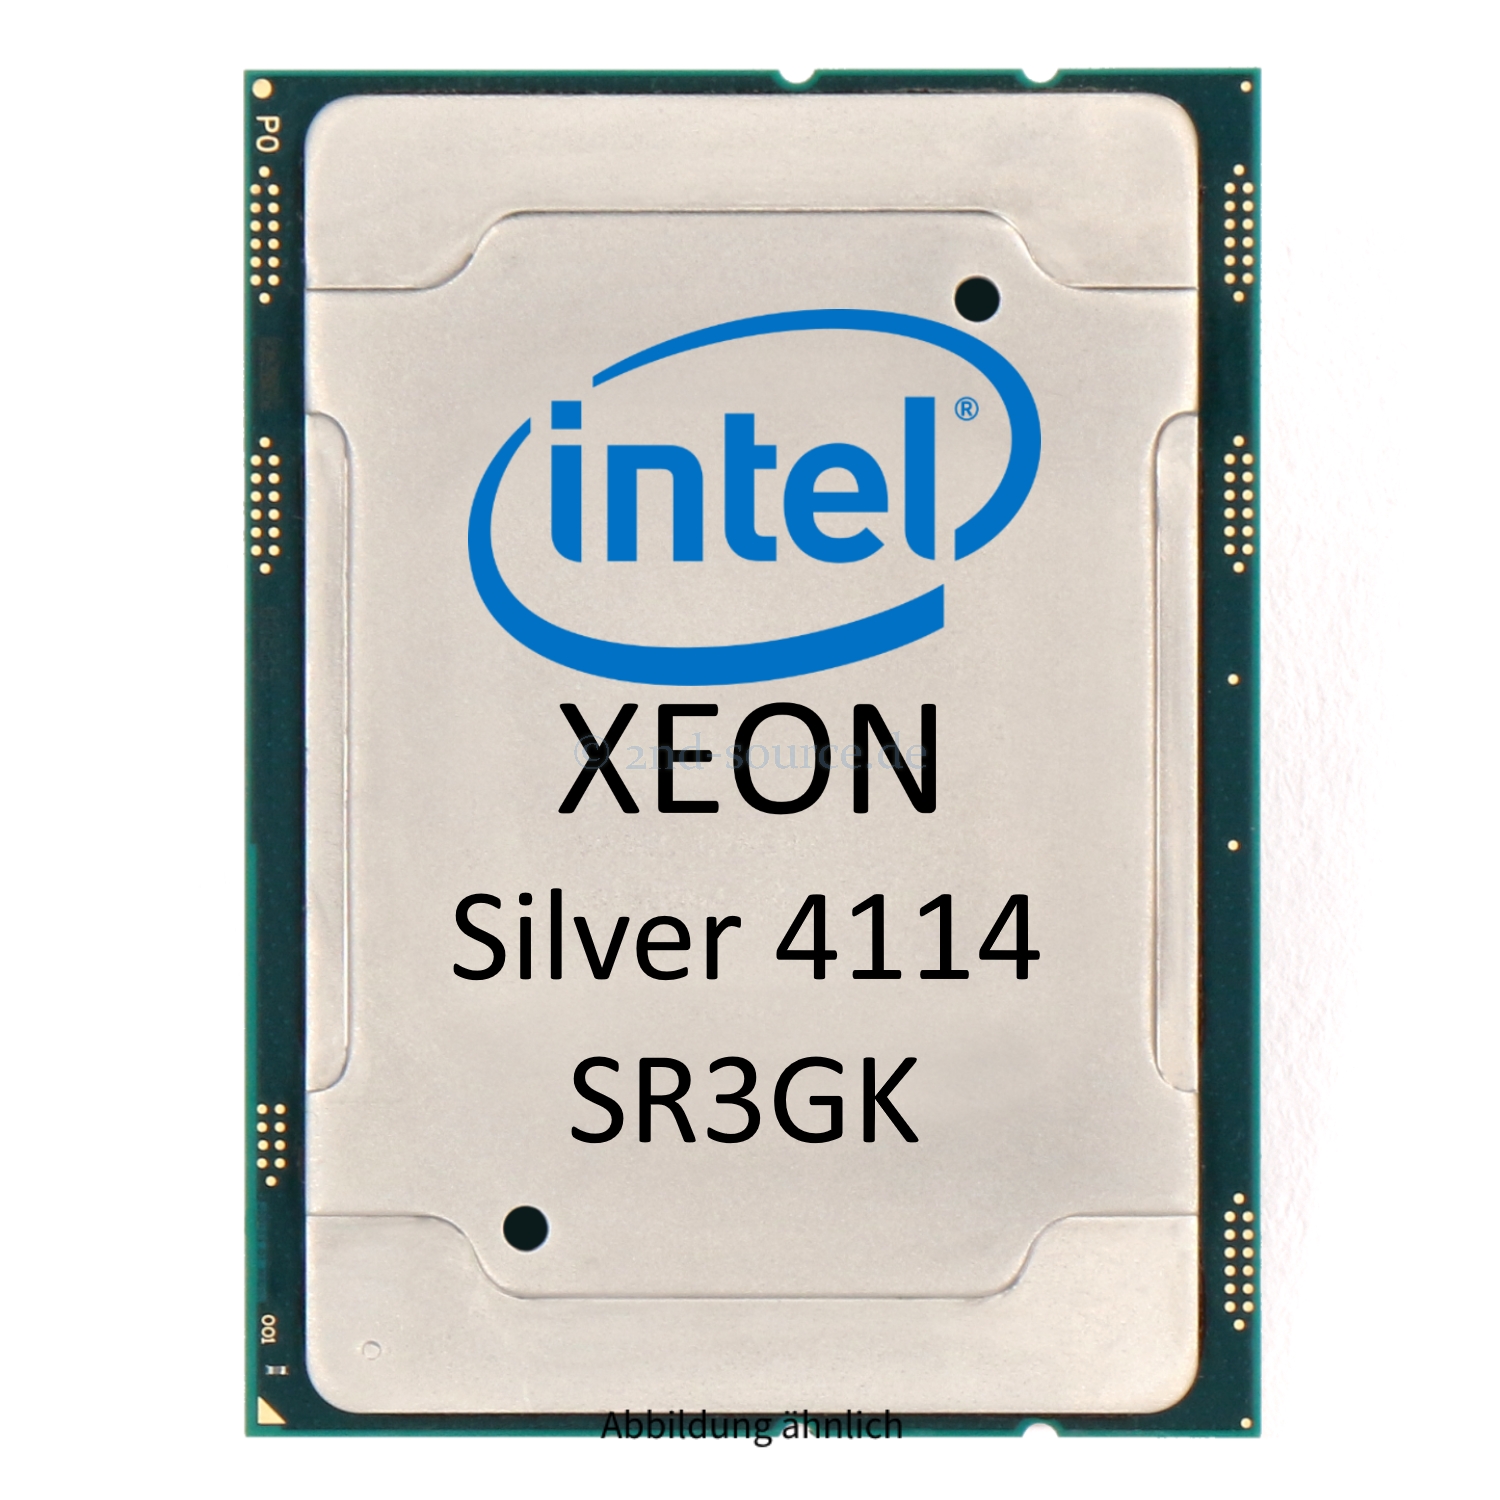 10x Intel Xeon Silver 4114 2.20GHz 13.75MB 10-Core CPU 85W SR3GK CD8067303561800